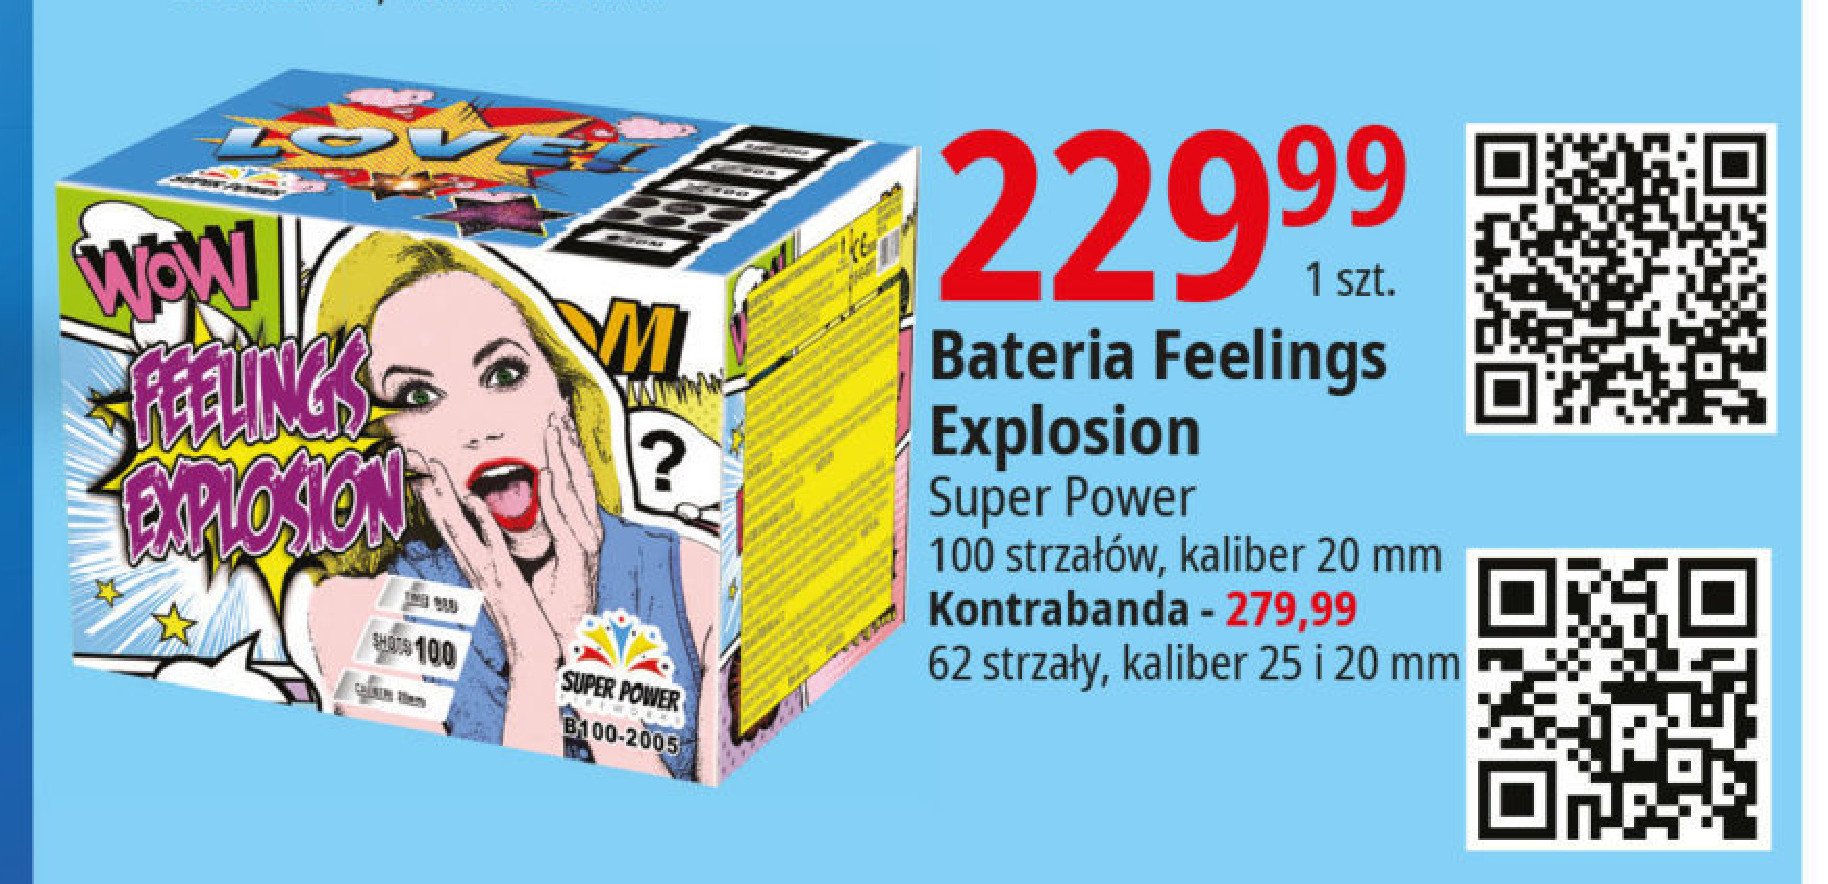 Bateria feeling explosion 100 strzałów SUPER POWER promocja